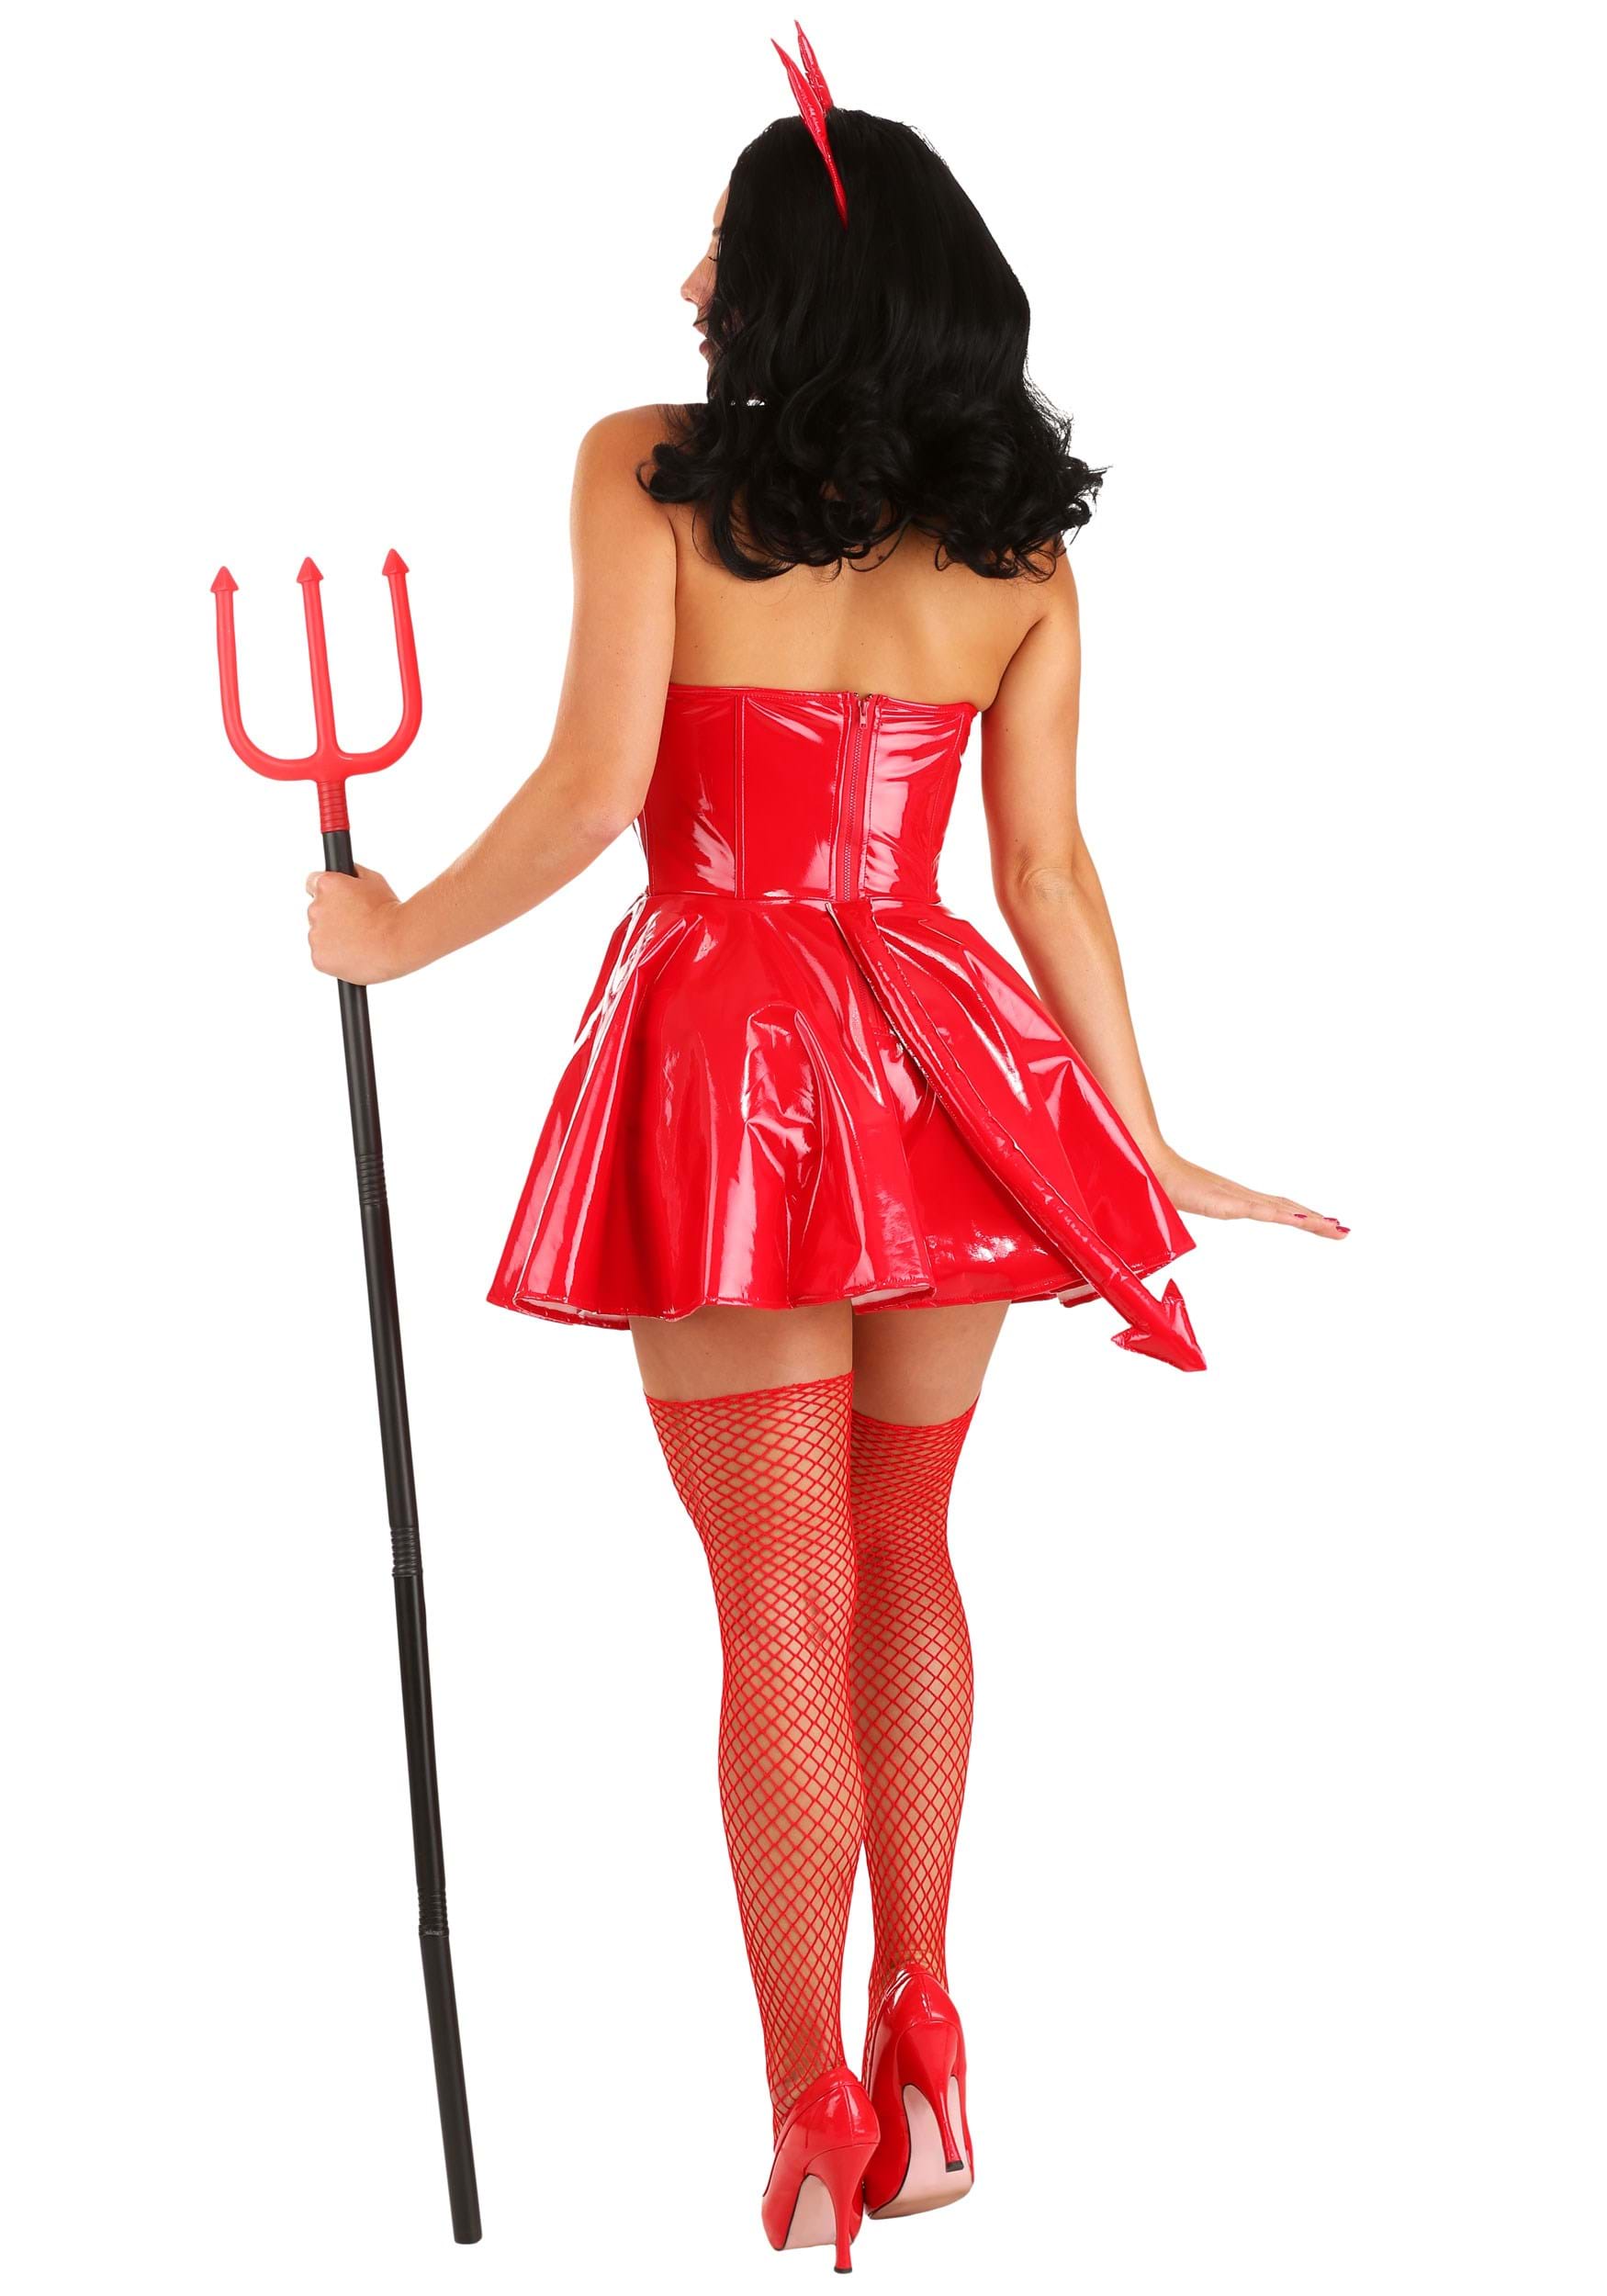 Red Hot Devil Costume for Women